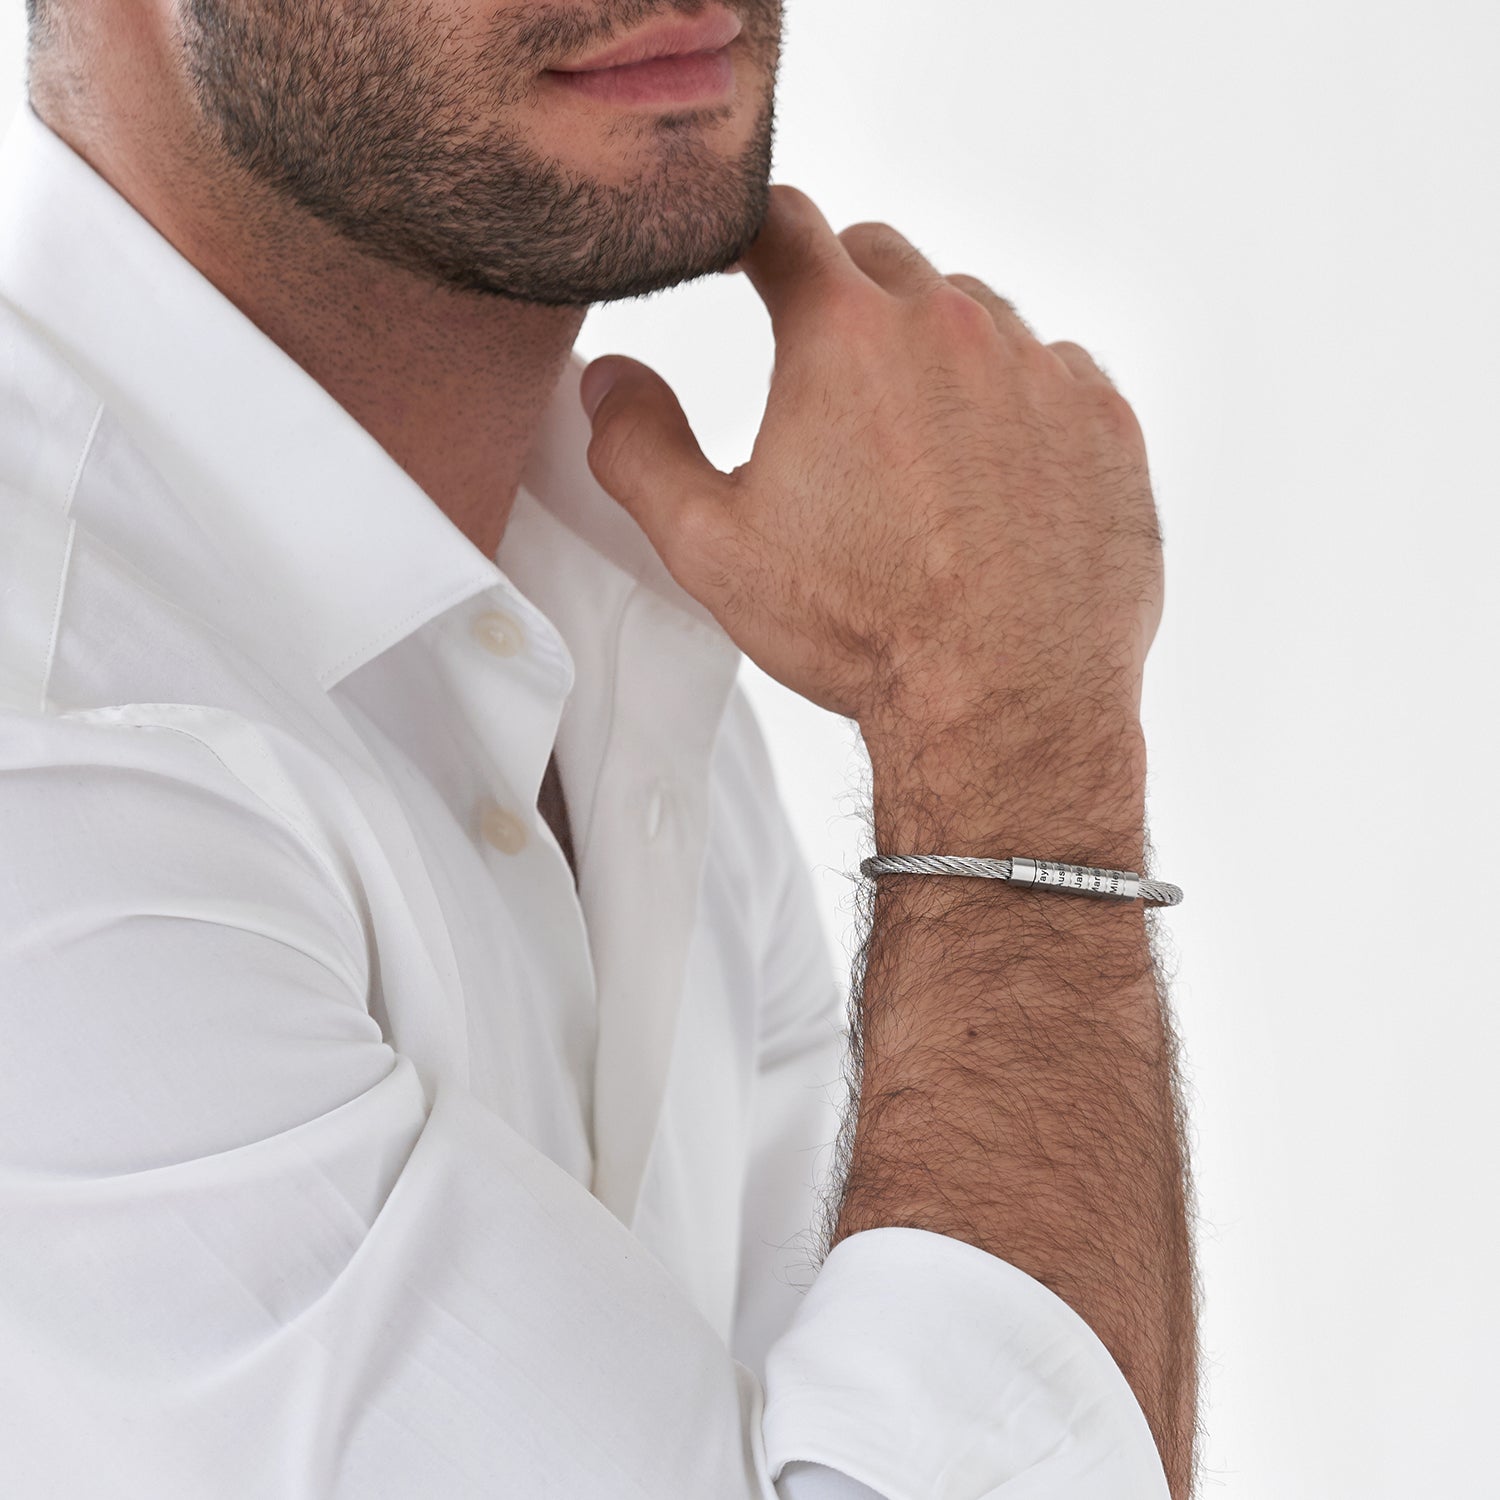 צמיד לגבר-  מתכת קלועה וחרוזי חריטה אישיים עם סוגר מגנטי